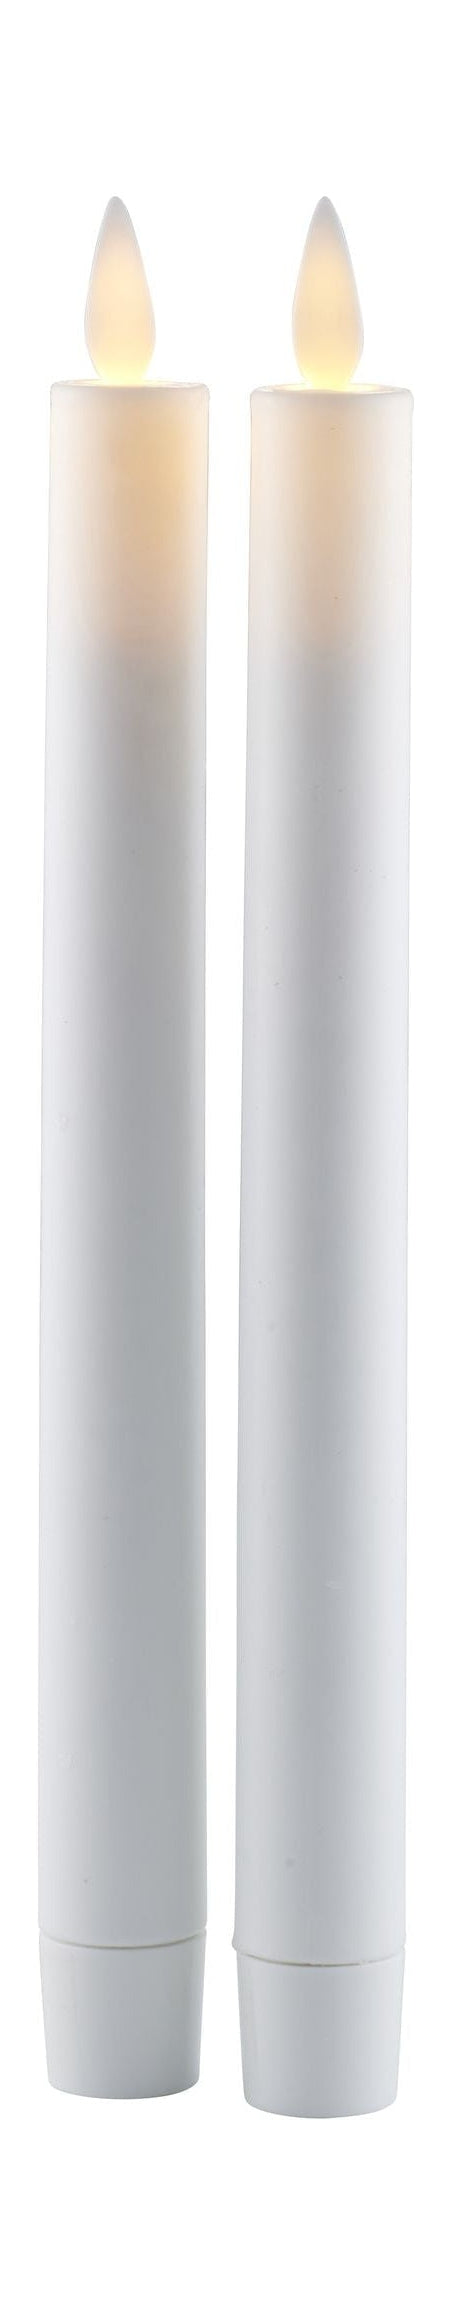 Sirius Sara oppladbar kron LED stearinlyshvit, Ø2,2X H25 cm